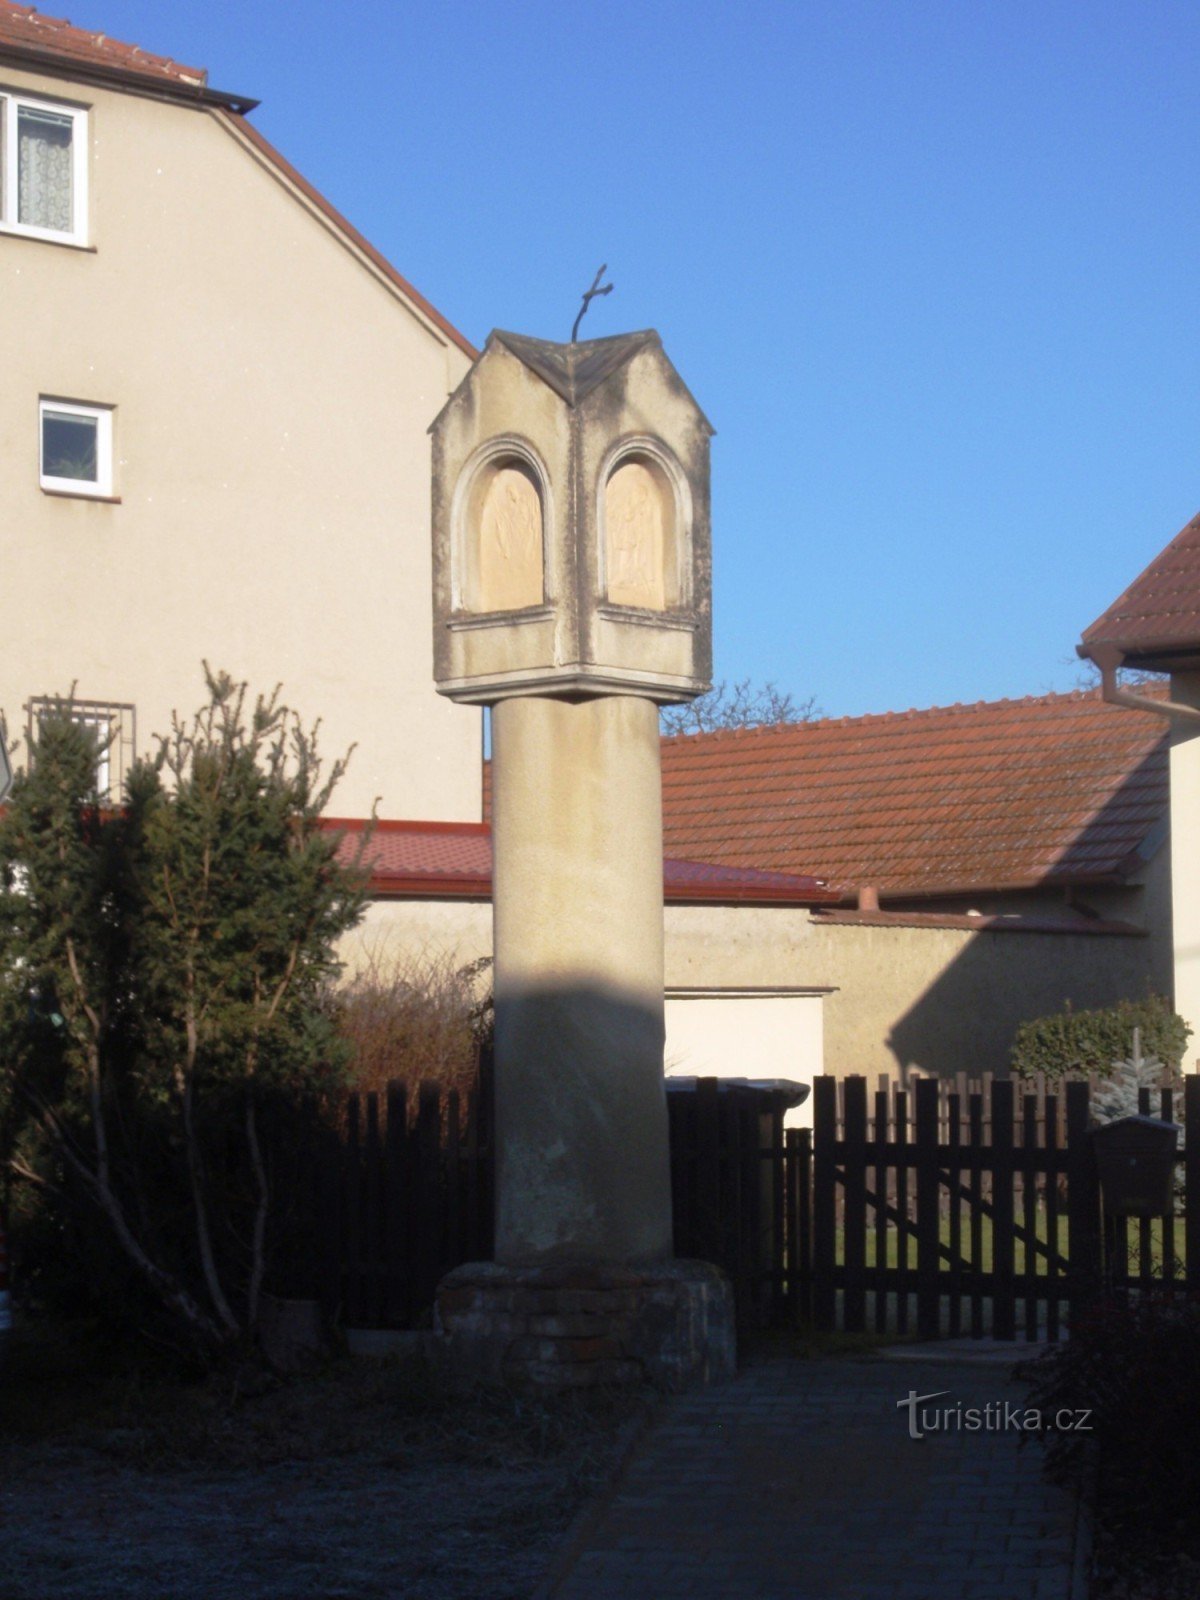 Troubsko - små monument